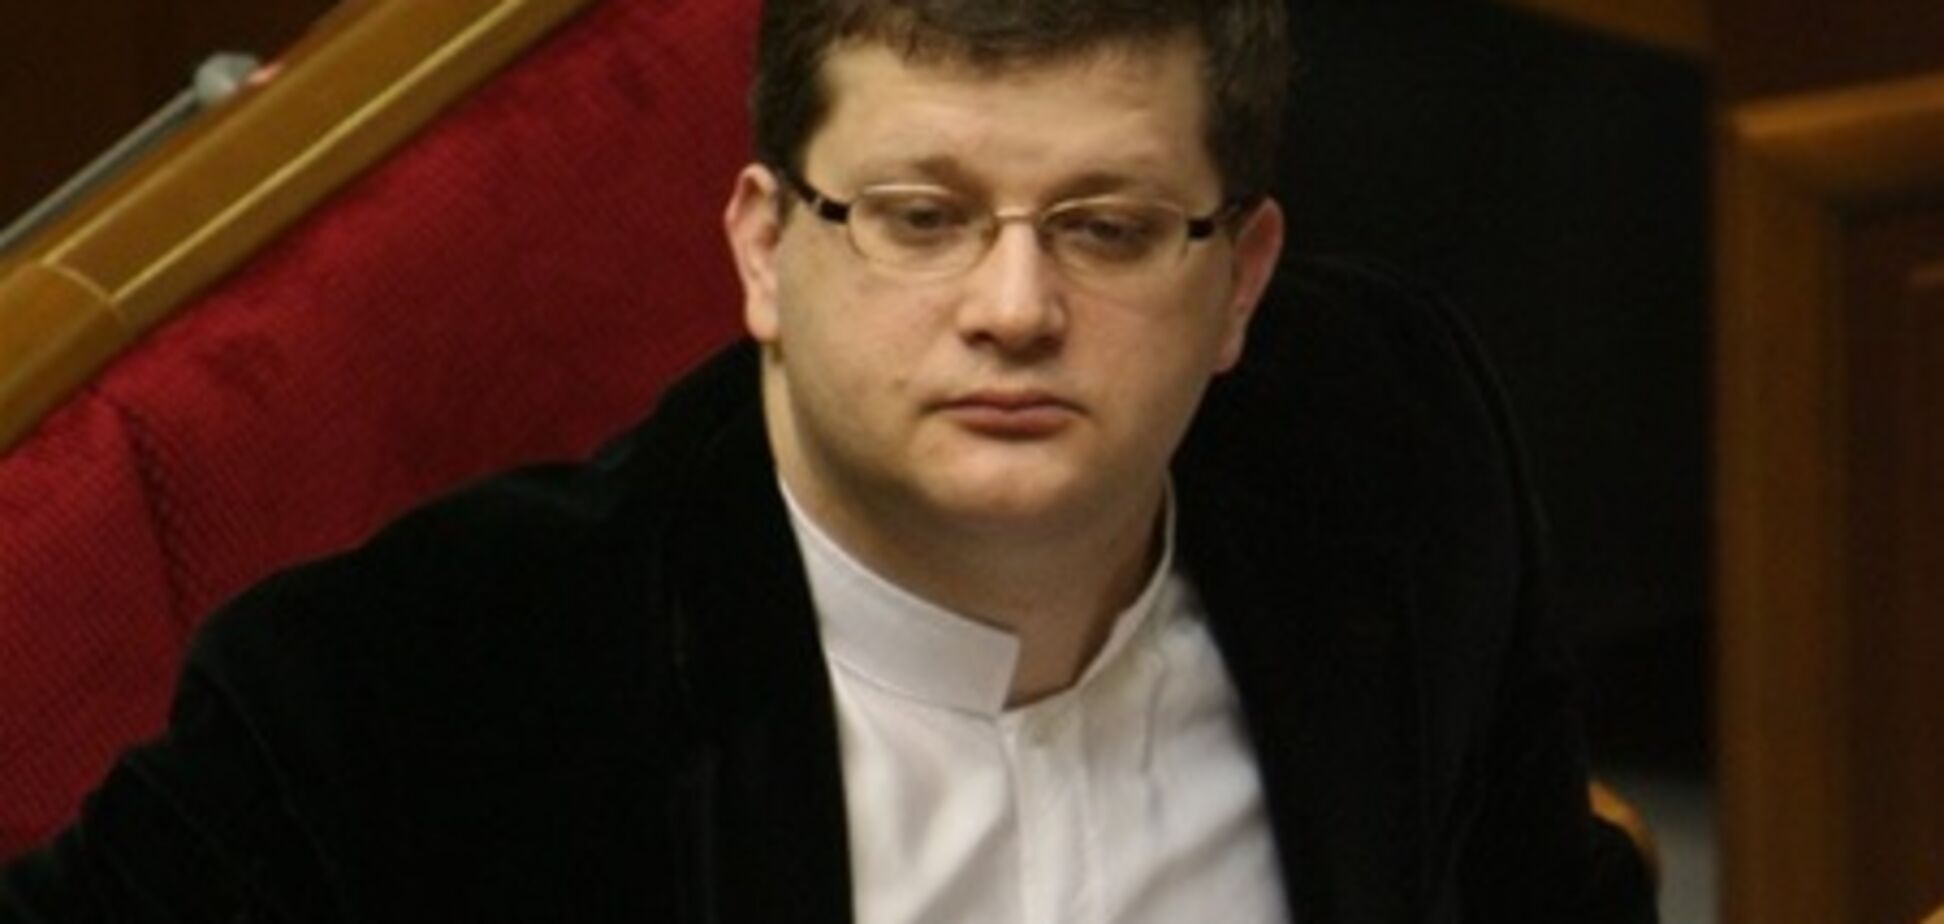 Соратники Тимошенко обвинили администрацию СИЗО во лжи